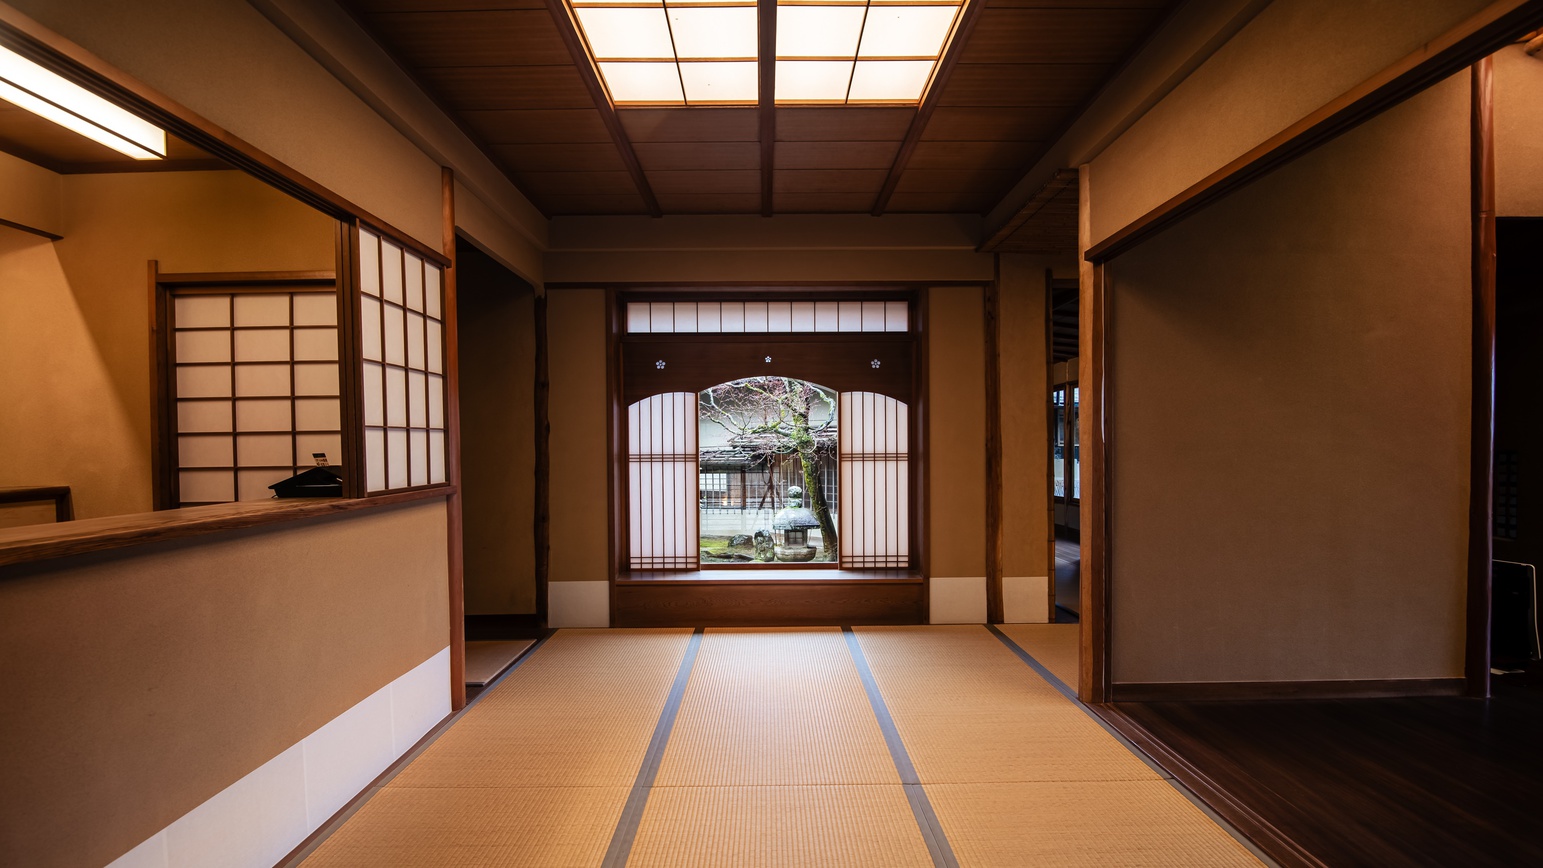 【概要】京の宮大工の手による、和の趣が豊かな木造建築です。